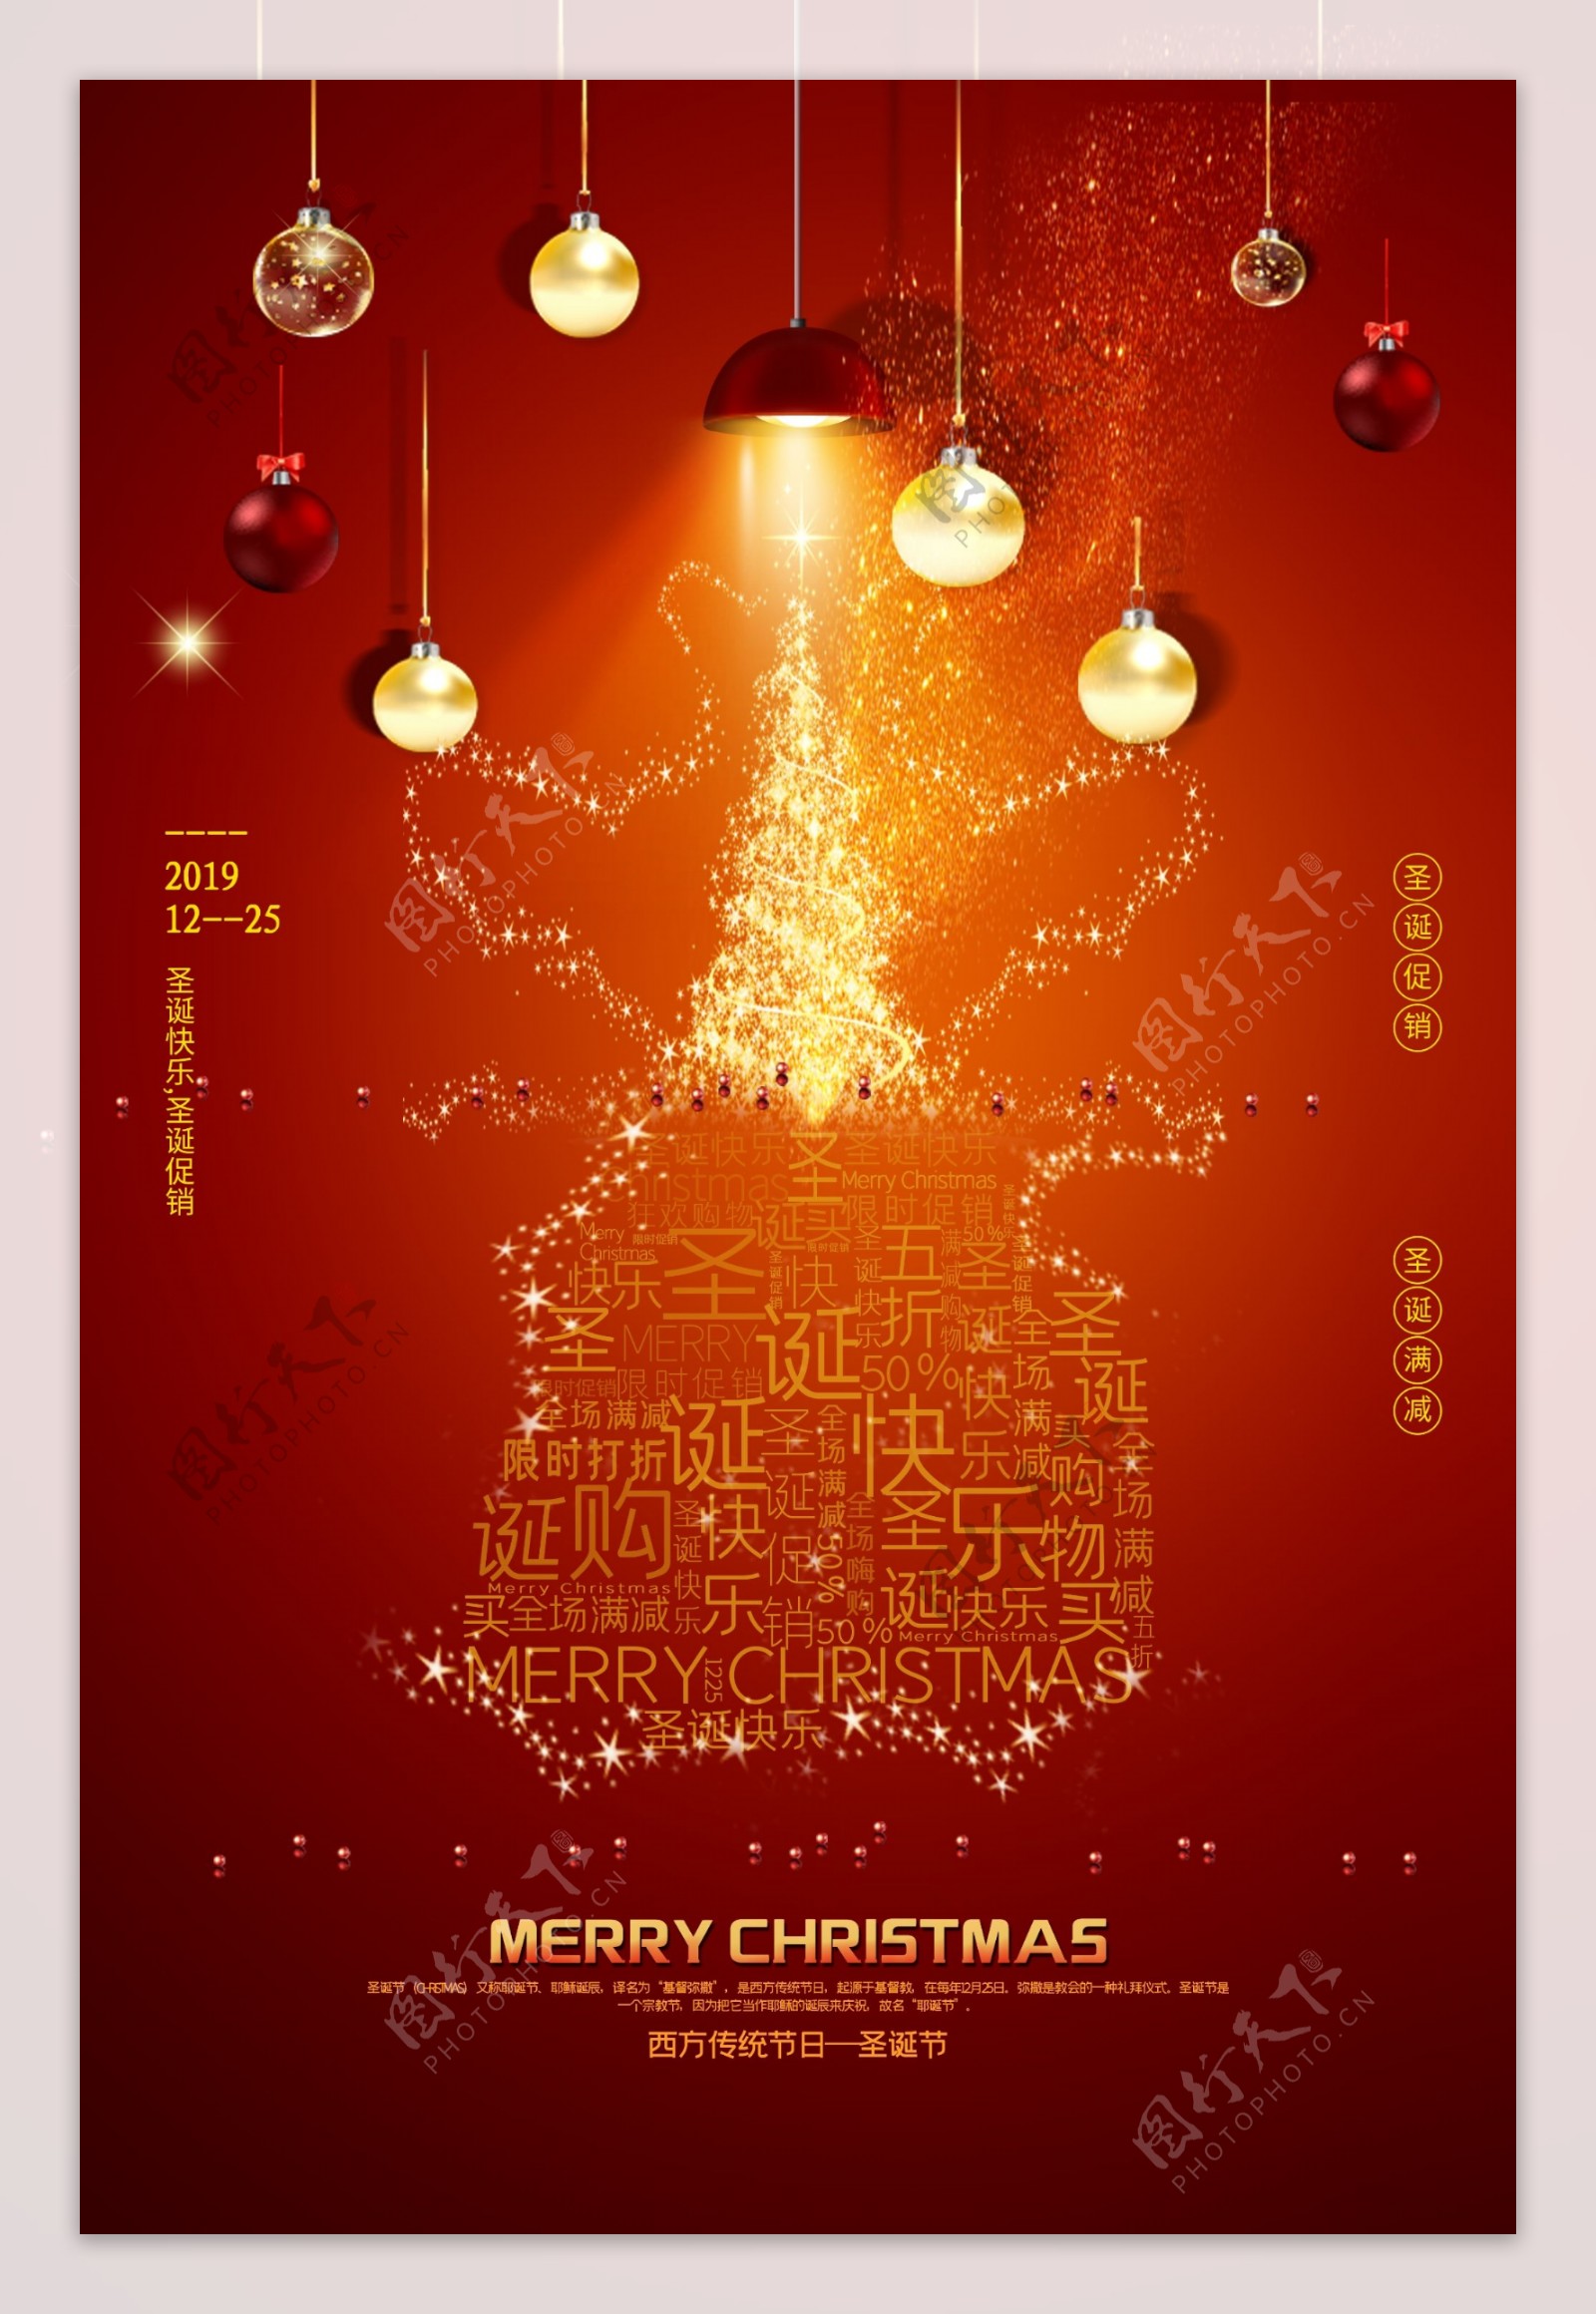 圣诞节节日活动促销宣传海报